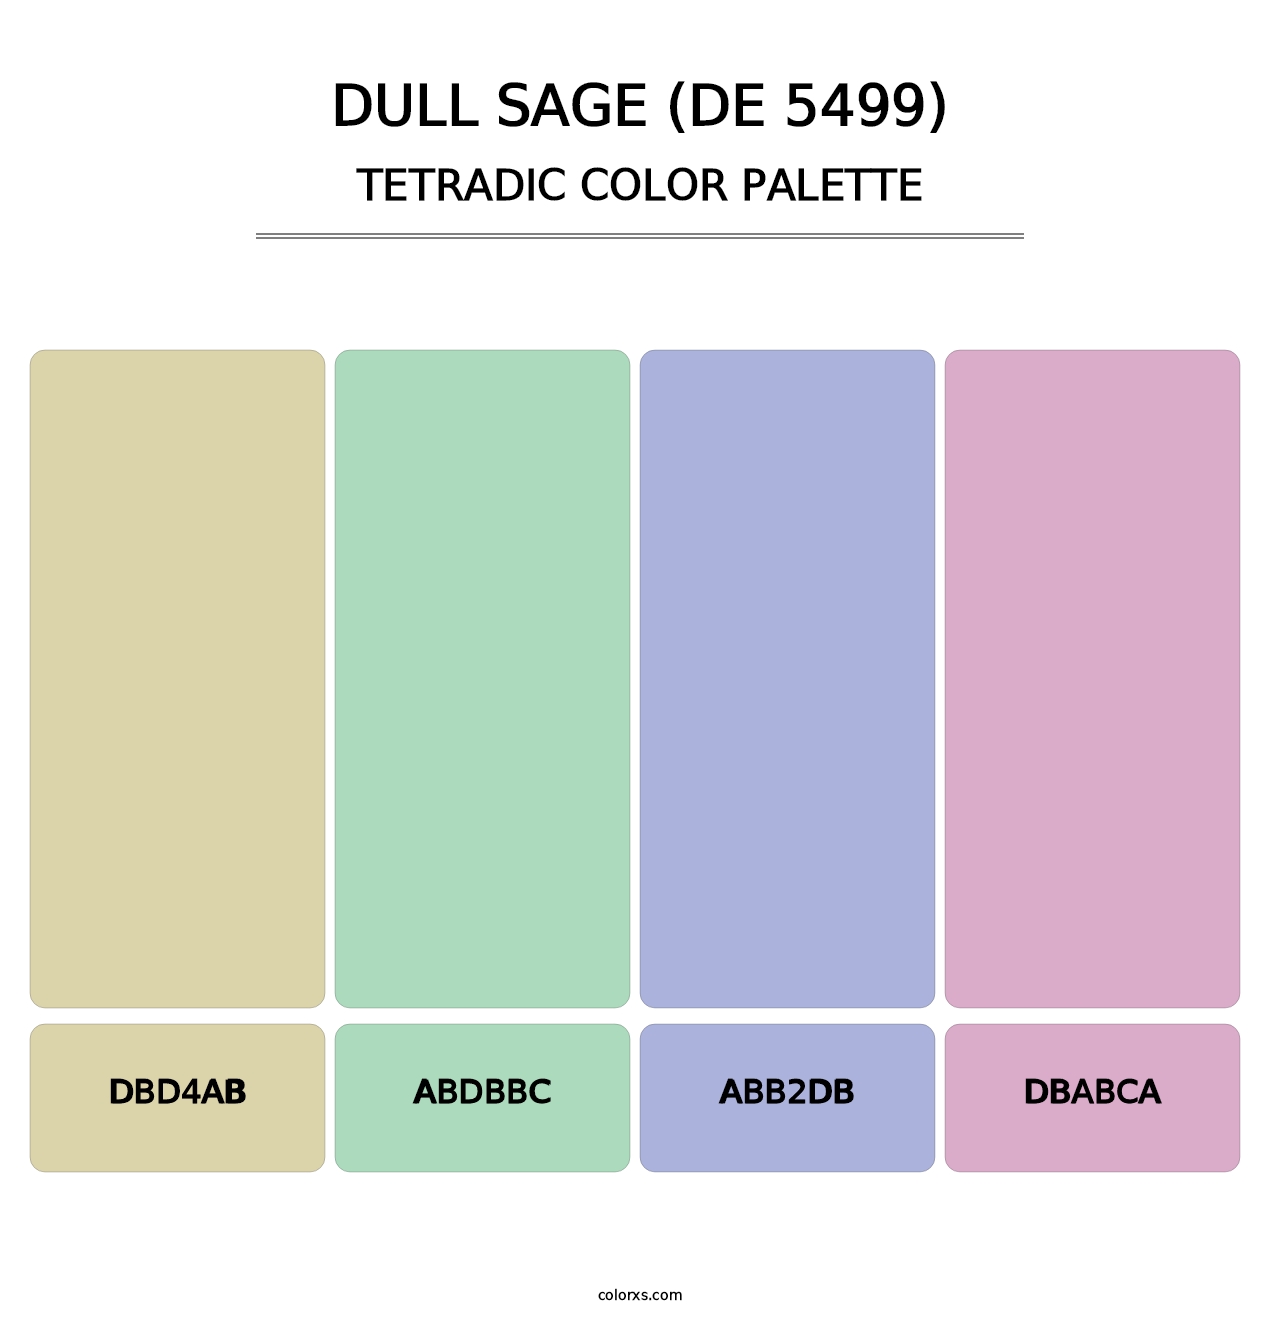 Dull Sage (DE 5499) - Tetradic Color Palette